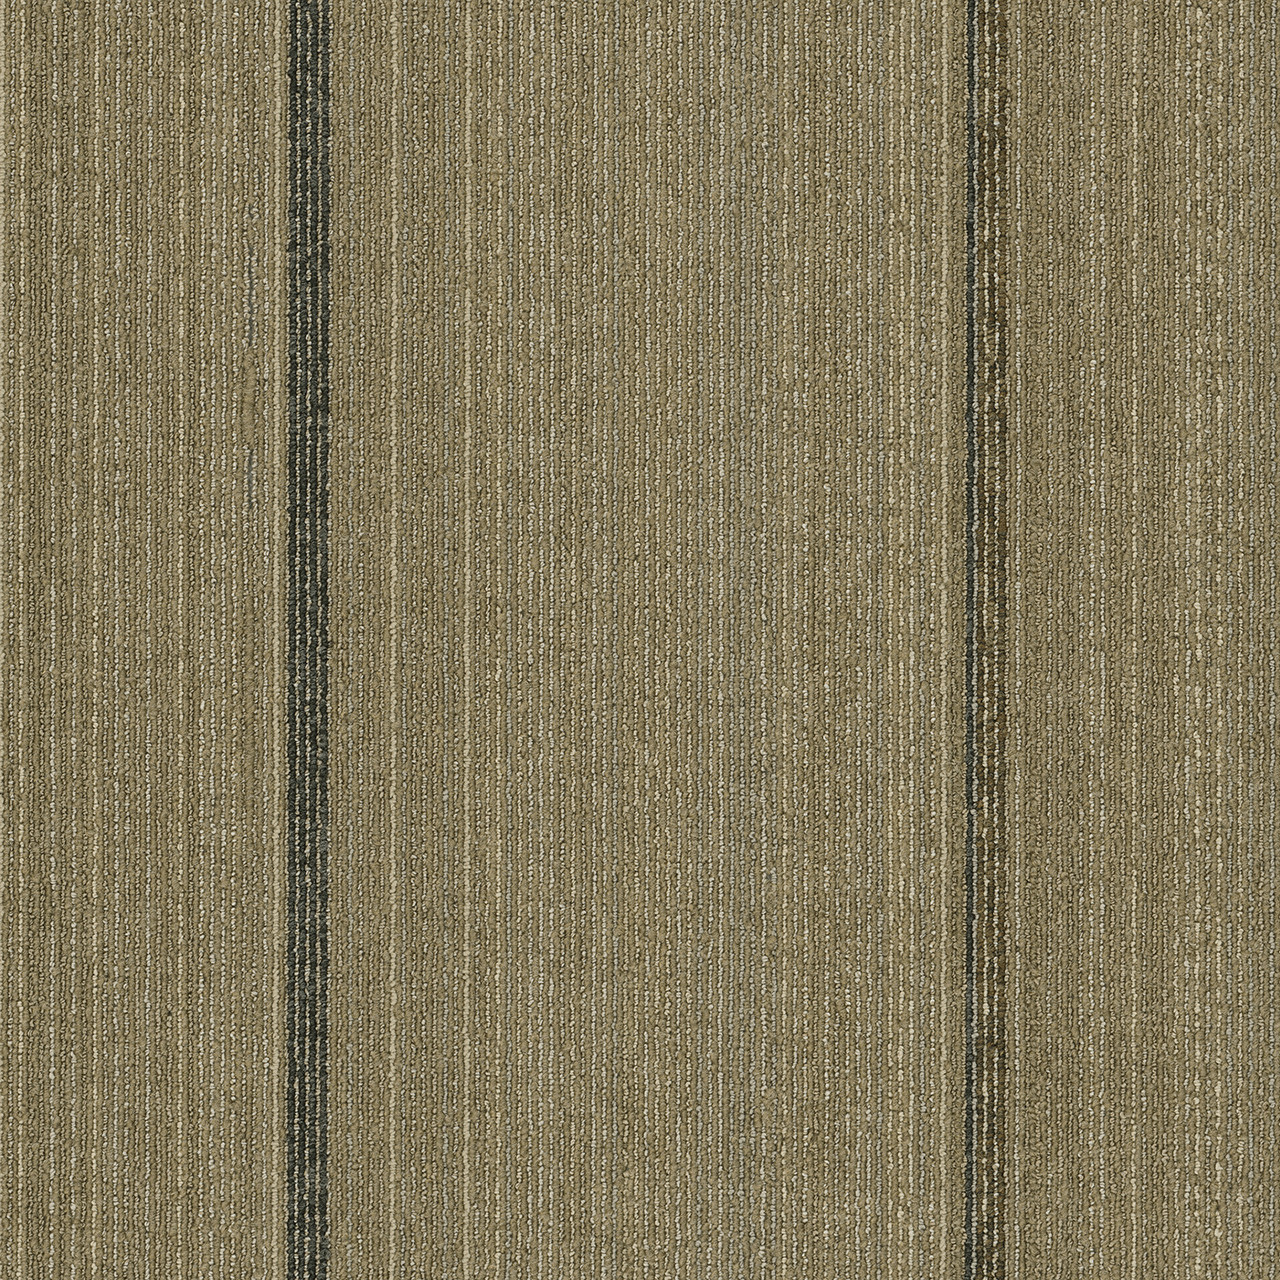 Pentz Revival Modular Carpet Tile Renewal 24" x 24" Premium (72 sq ft/ctn)